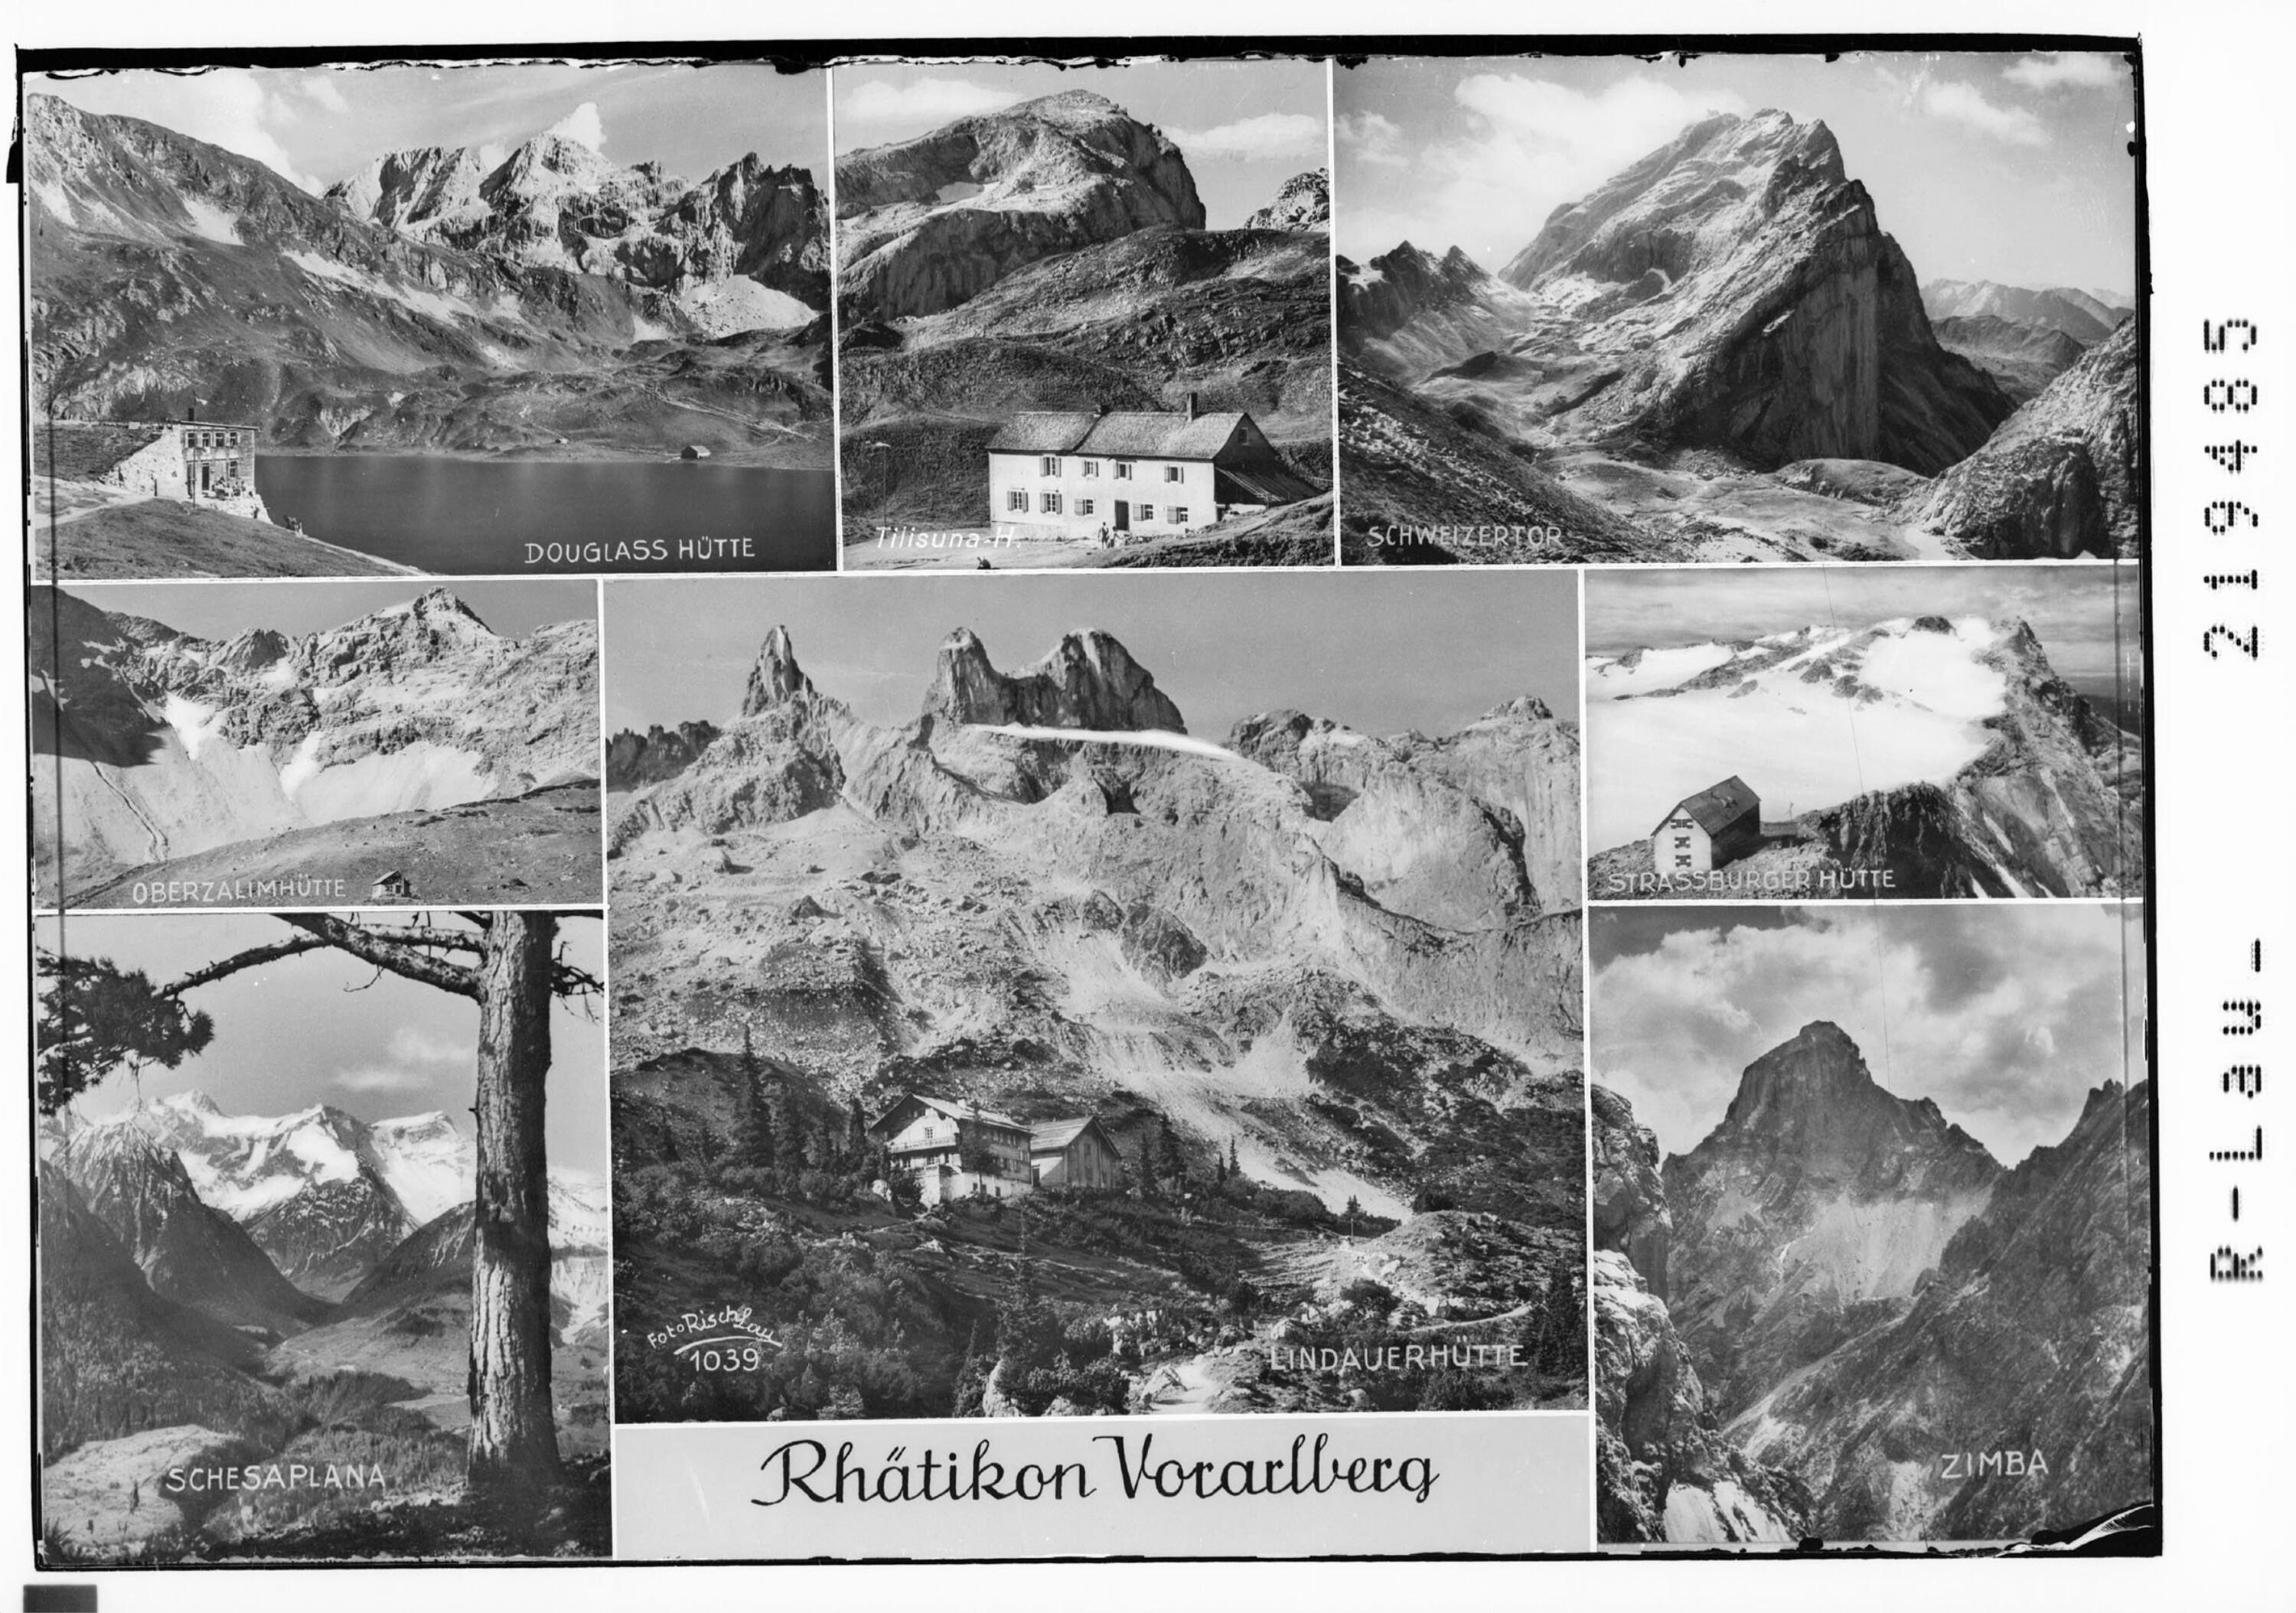 Rhätikon Vorarlberg></div>


    <hr>
    <div class=